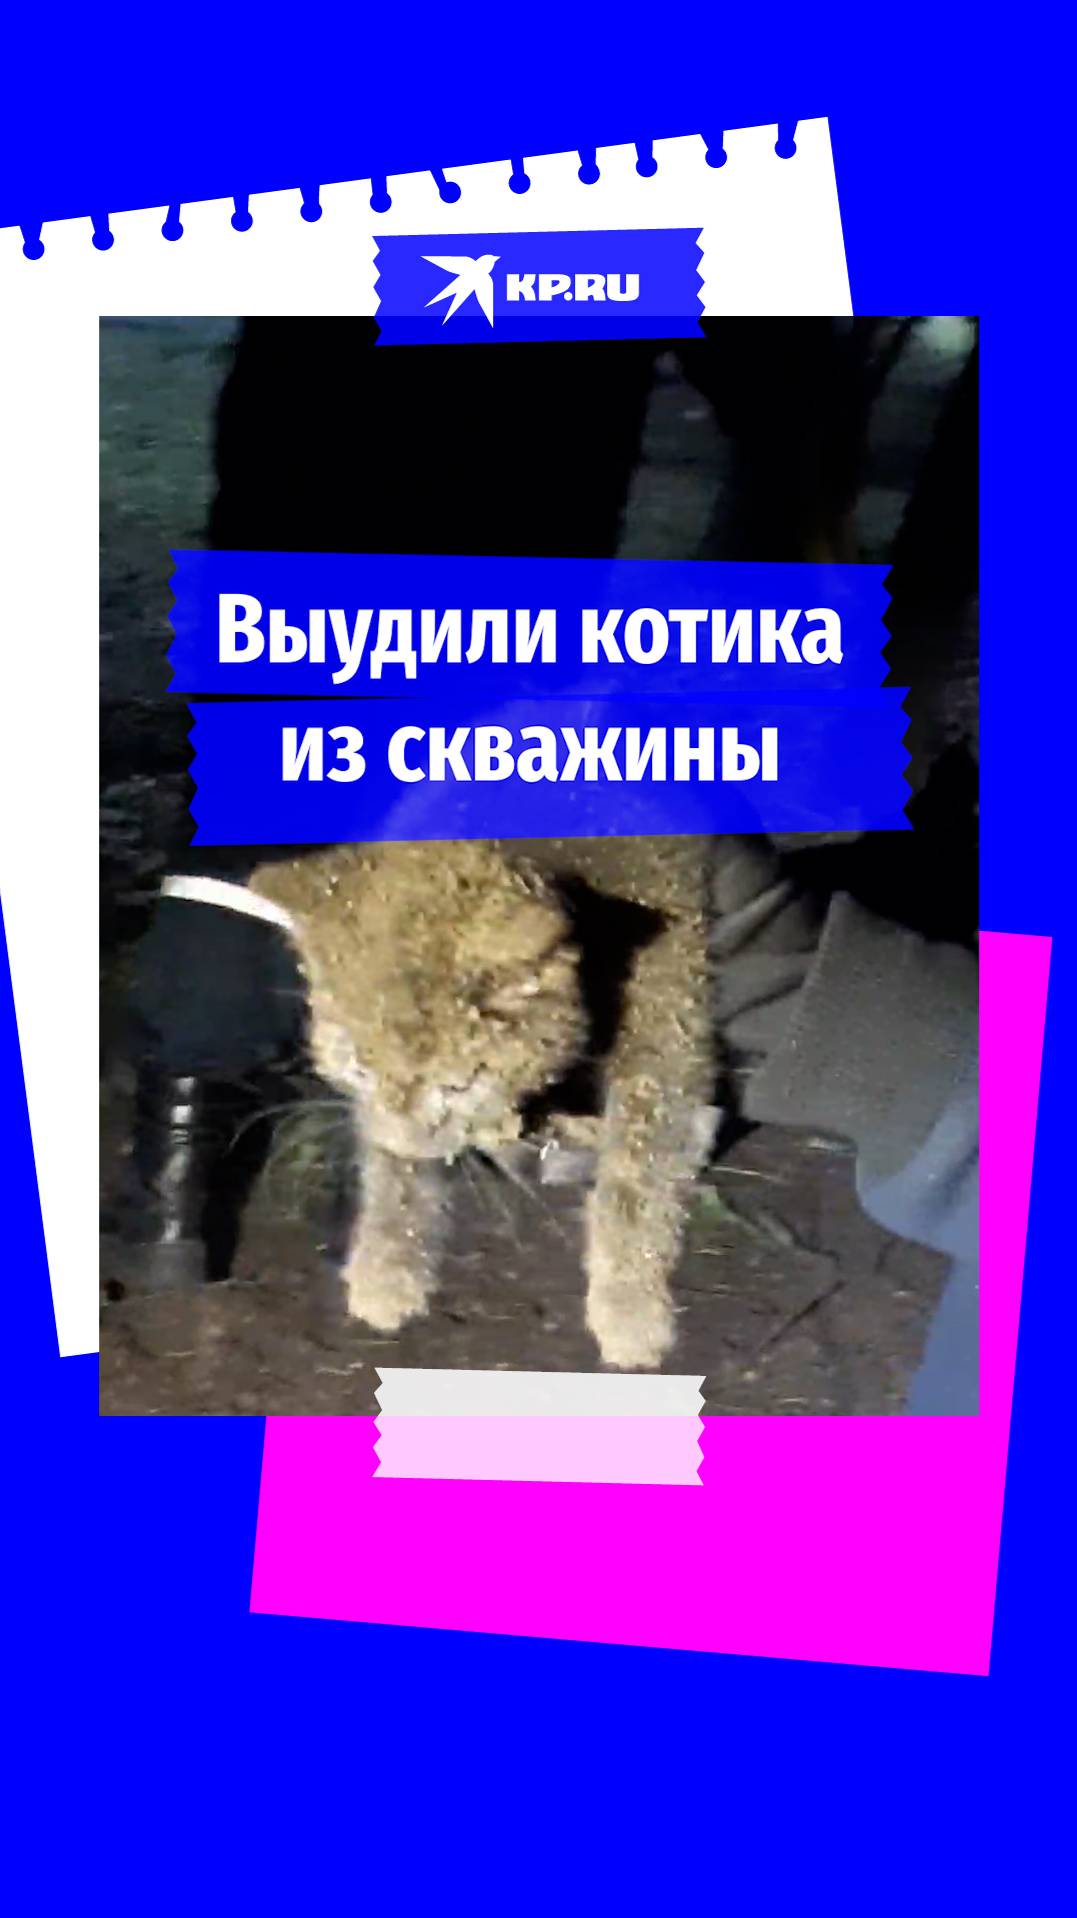 Спасатели достали котика из глубокой скважины в Москве